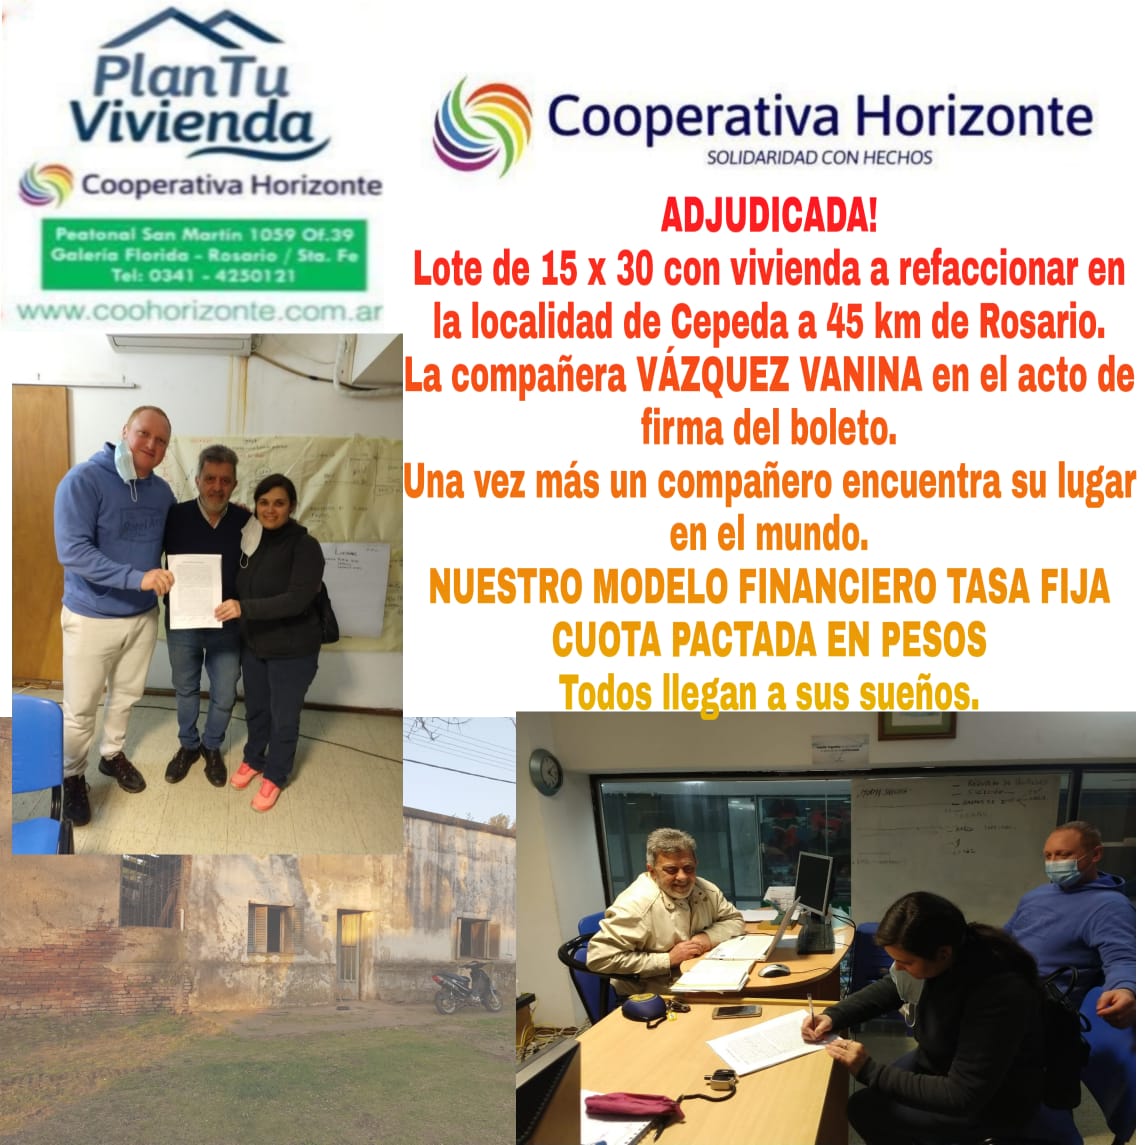 Cooperativa Horizonte, Plan tu vivienda, microcreditos, Creditos, Rosario, Santa Fe